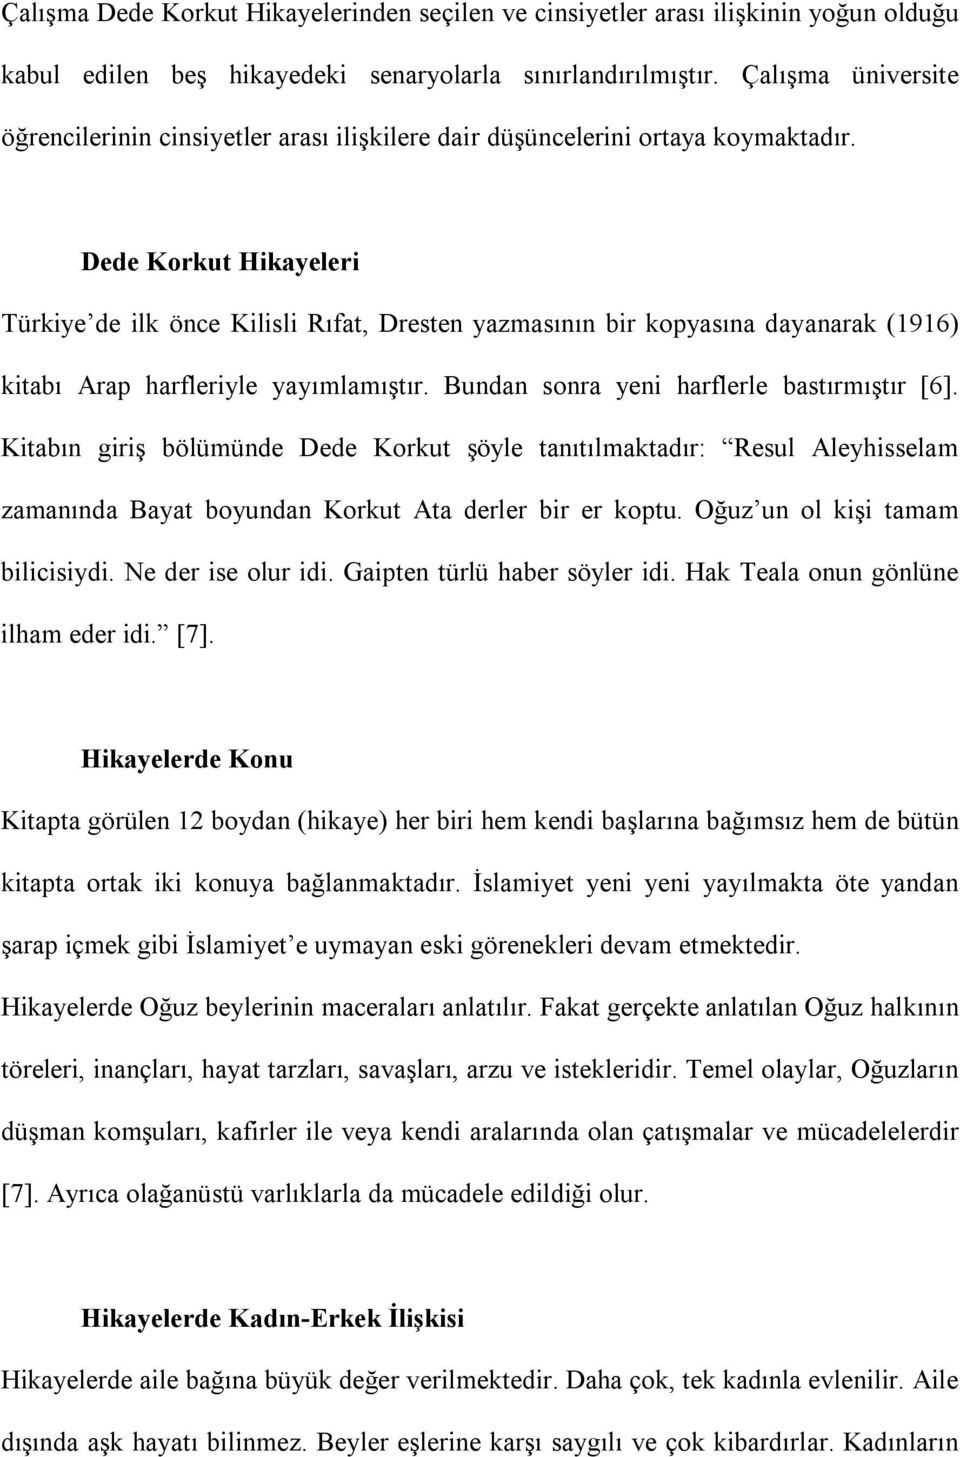 Dede Korkut Hikayeleri Türkiye de ilk önce Kilisli Rıfat, Dresten yazmasının bir kopyasına dayanarak (1916) kitabı Arap harfleriyle yayımlamıştır. Bundan sonra yeni harflerle bastırmıştır [6].